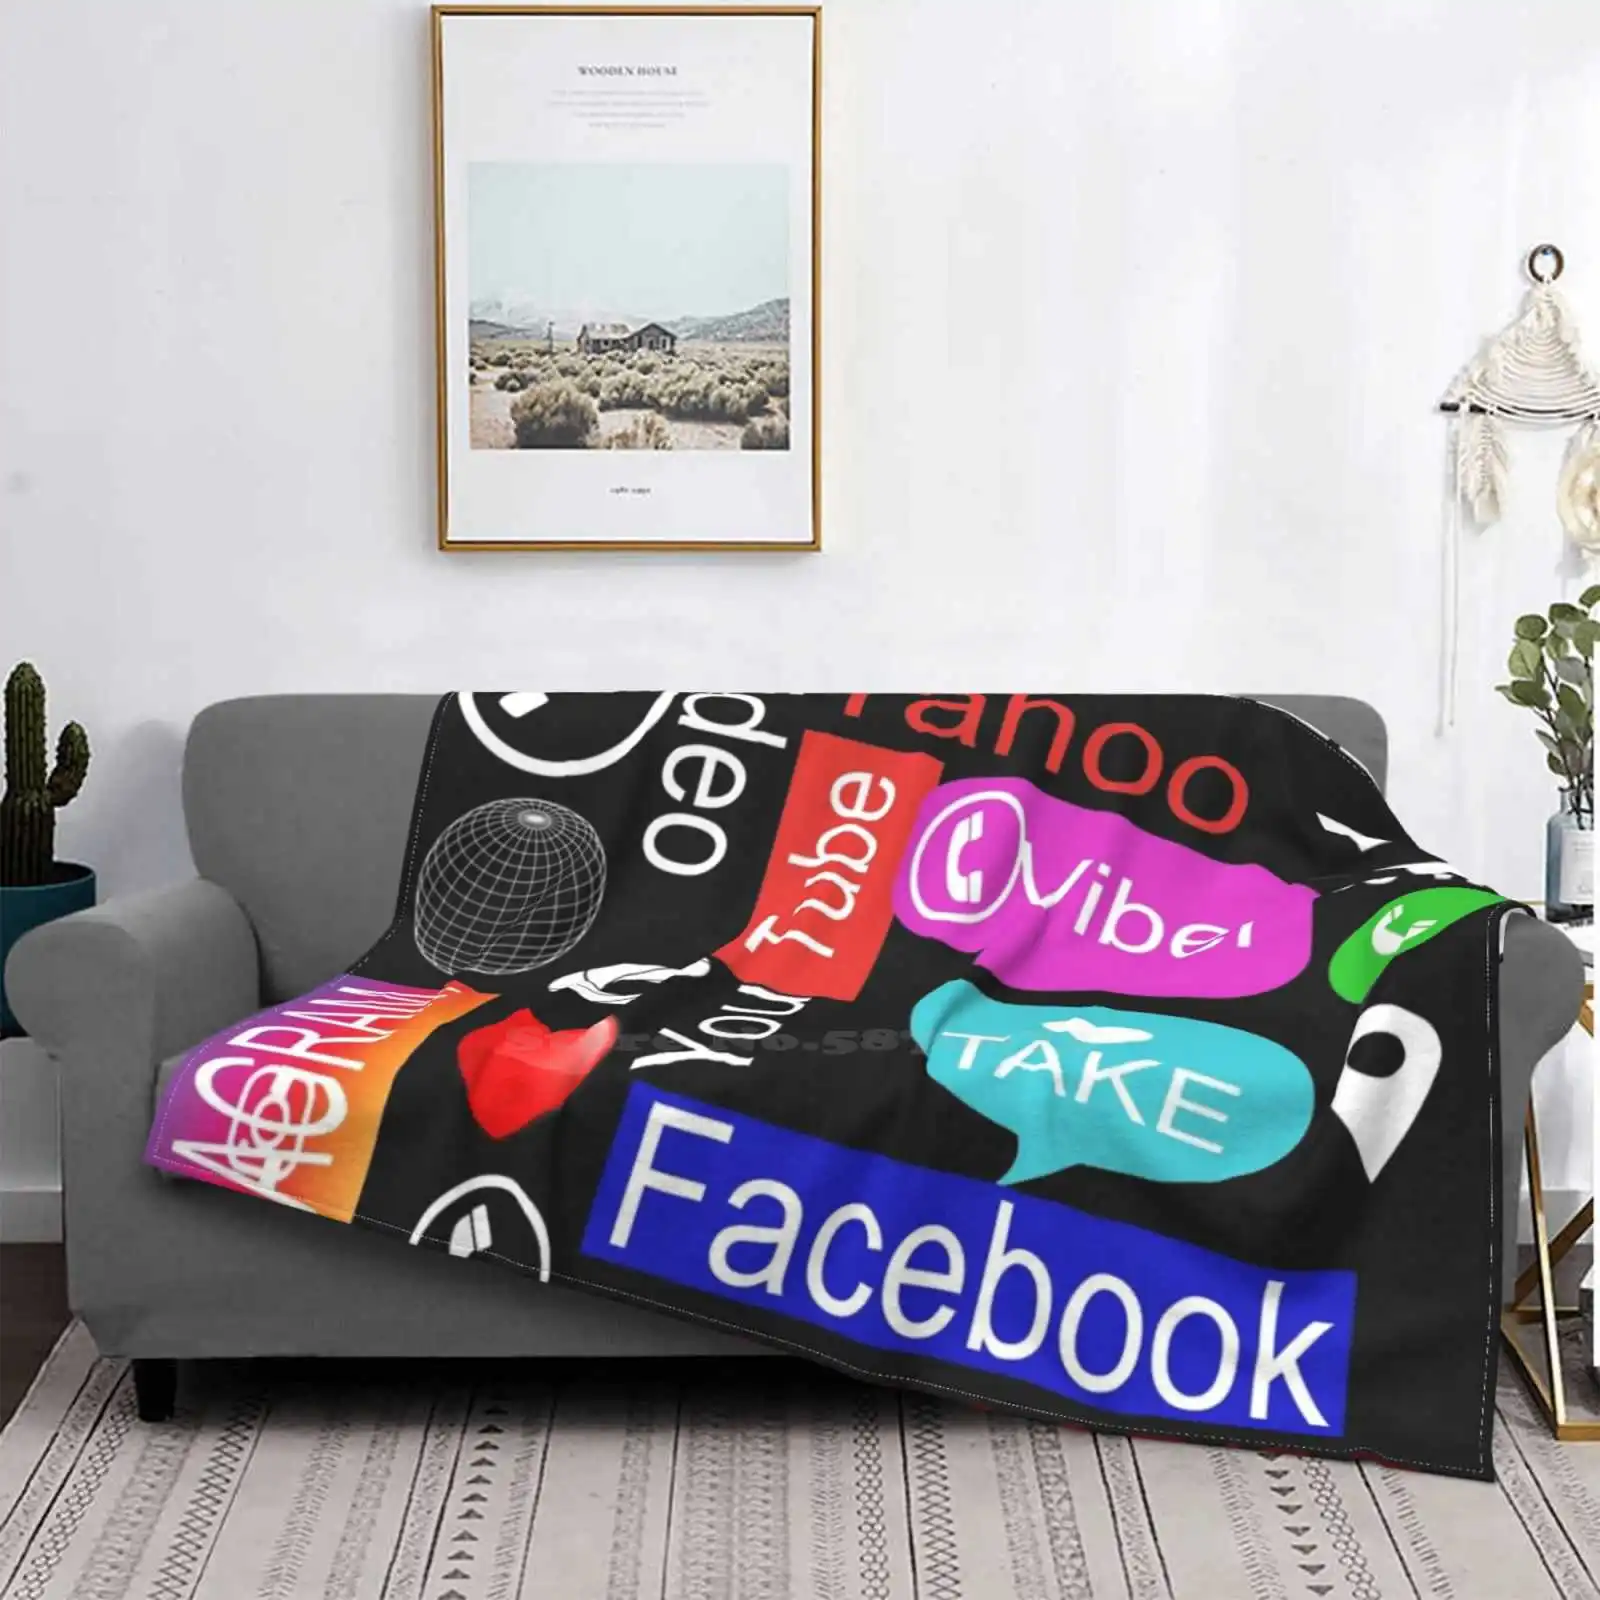 

Социальные сети: милые футболки, виртуальные миры, социальные сети, сегодня «Facebook Messanger» в Instagram и «Веселая Мода в трендовом стиле